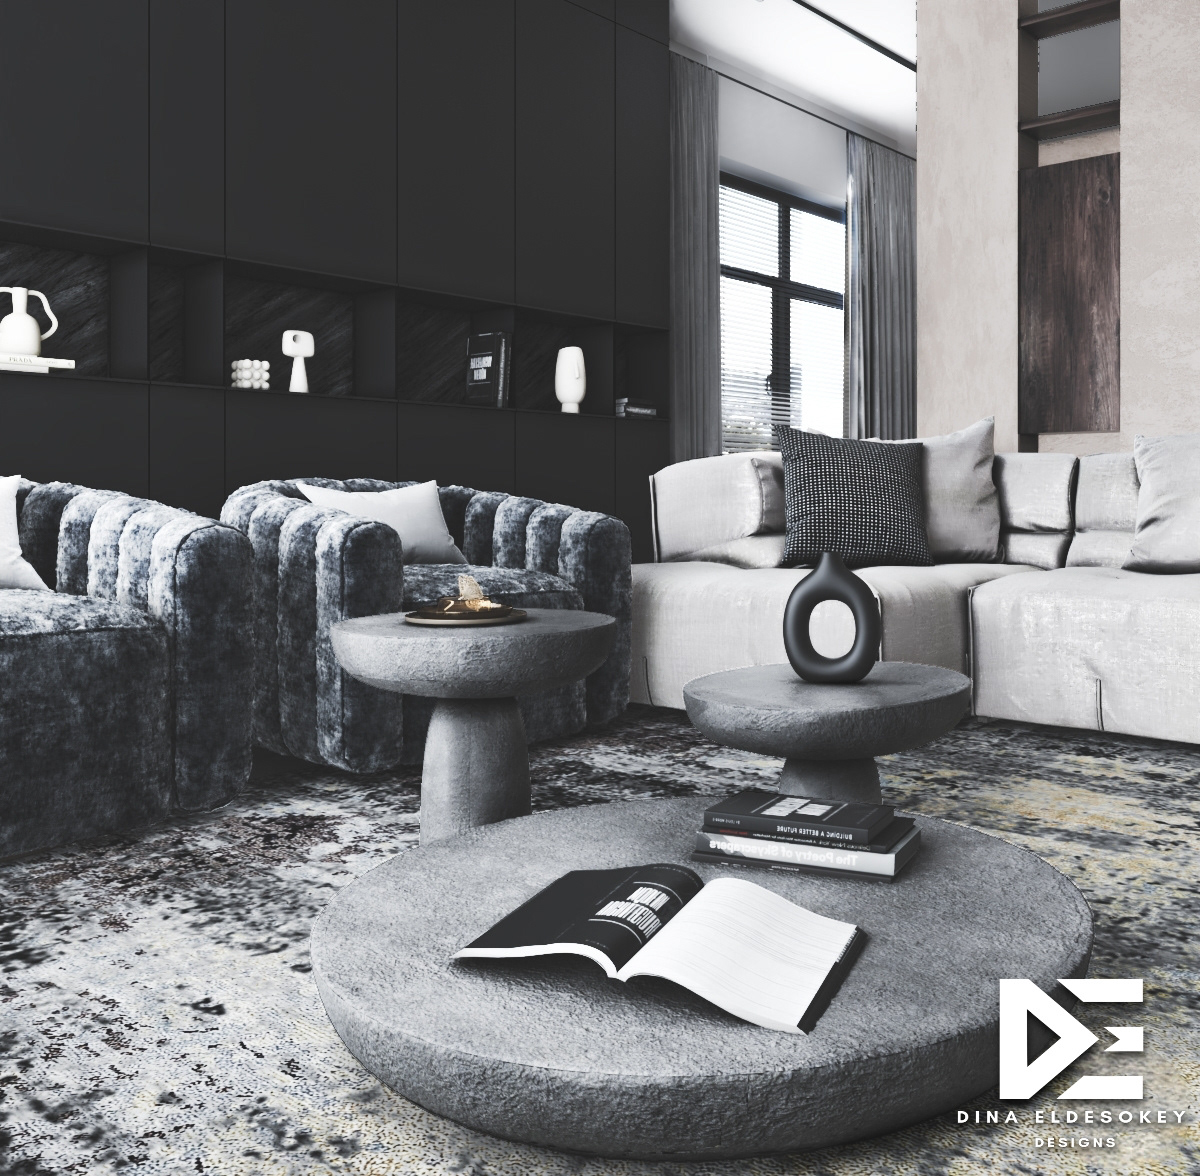 3ds max architecture idea Interior interior design  living room minimalist modern visualization vray